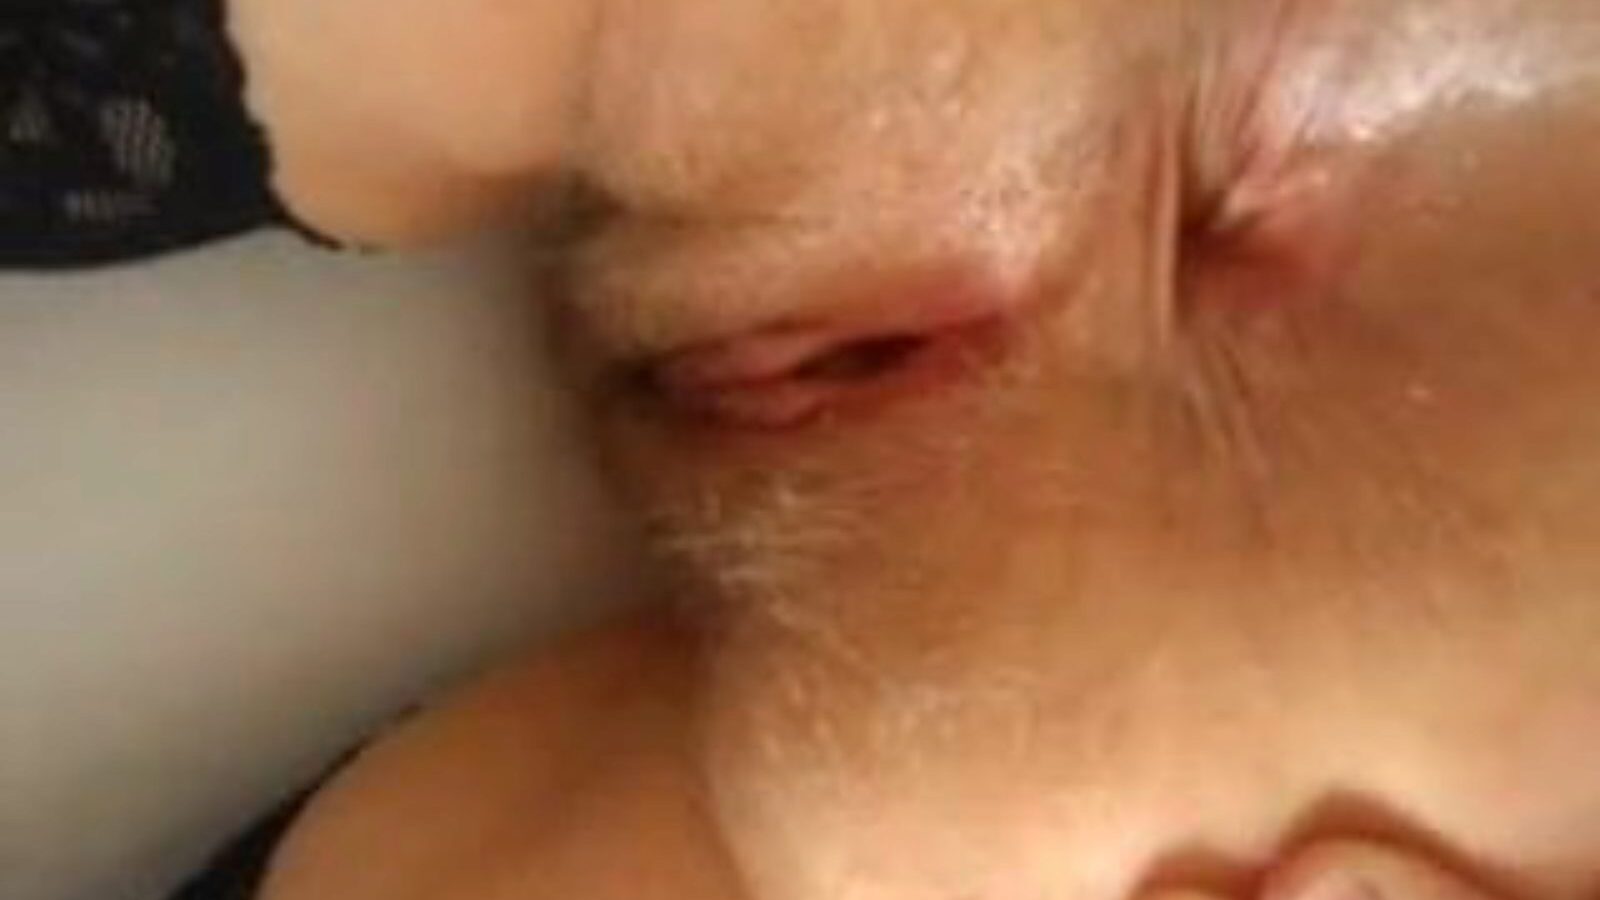 Spread Ass: Spread Open & Mobile Ass Porno-Video - Xhamster Sieh dir kostenlos die Spread Ass Tube Bang-Out-Filmszene auf Xhamster an, mit der erstaunlichen Schar von Spread Open Mobile Ass & Open Arschloch-Porno-Episodensequenzen